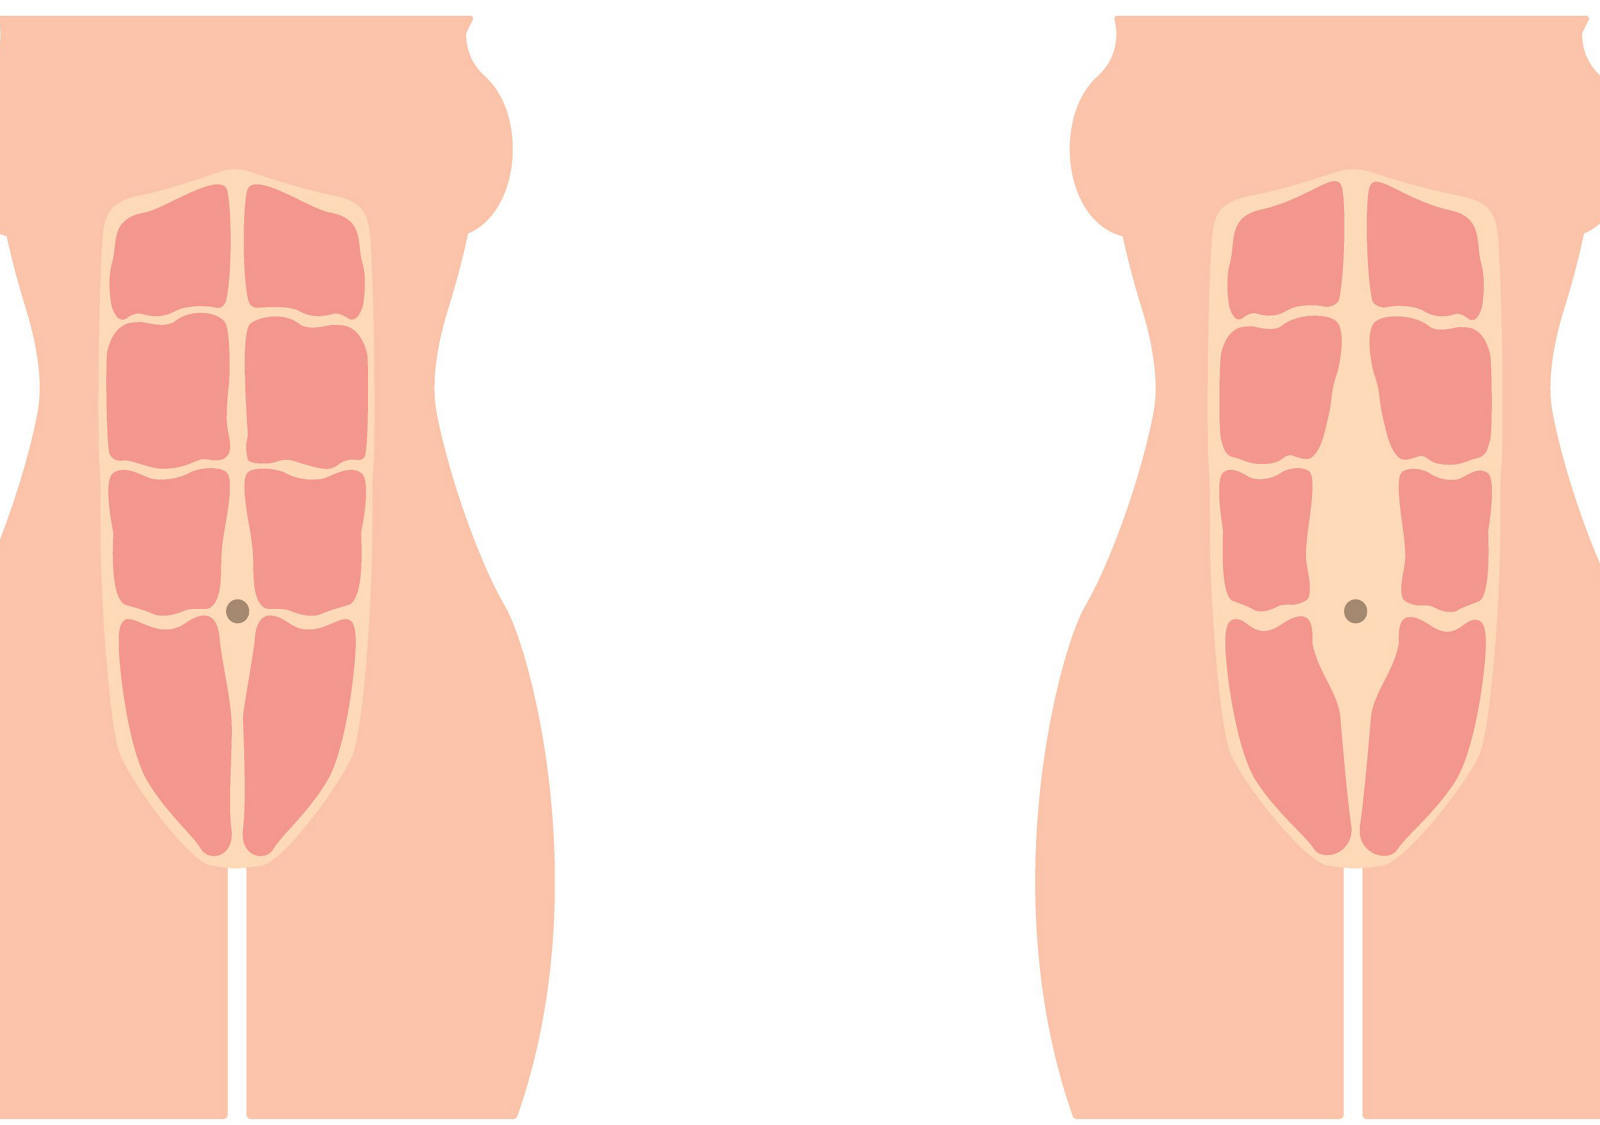 La musculature abdominale avant, pendant et après la grossesse